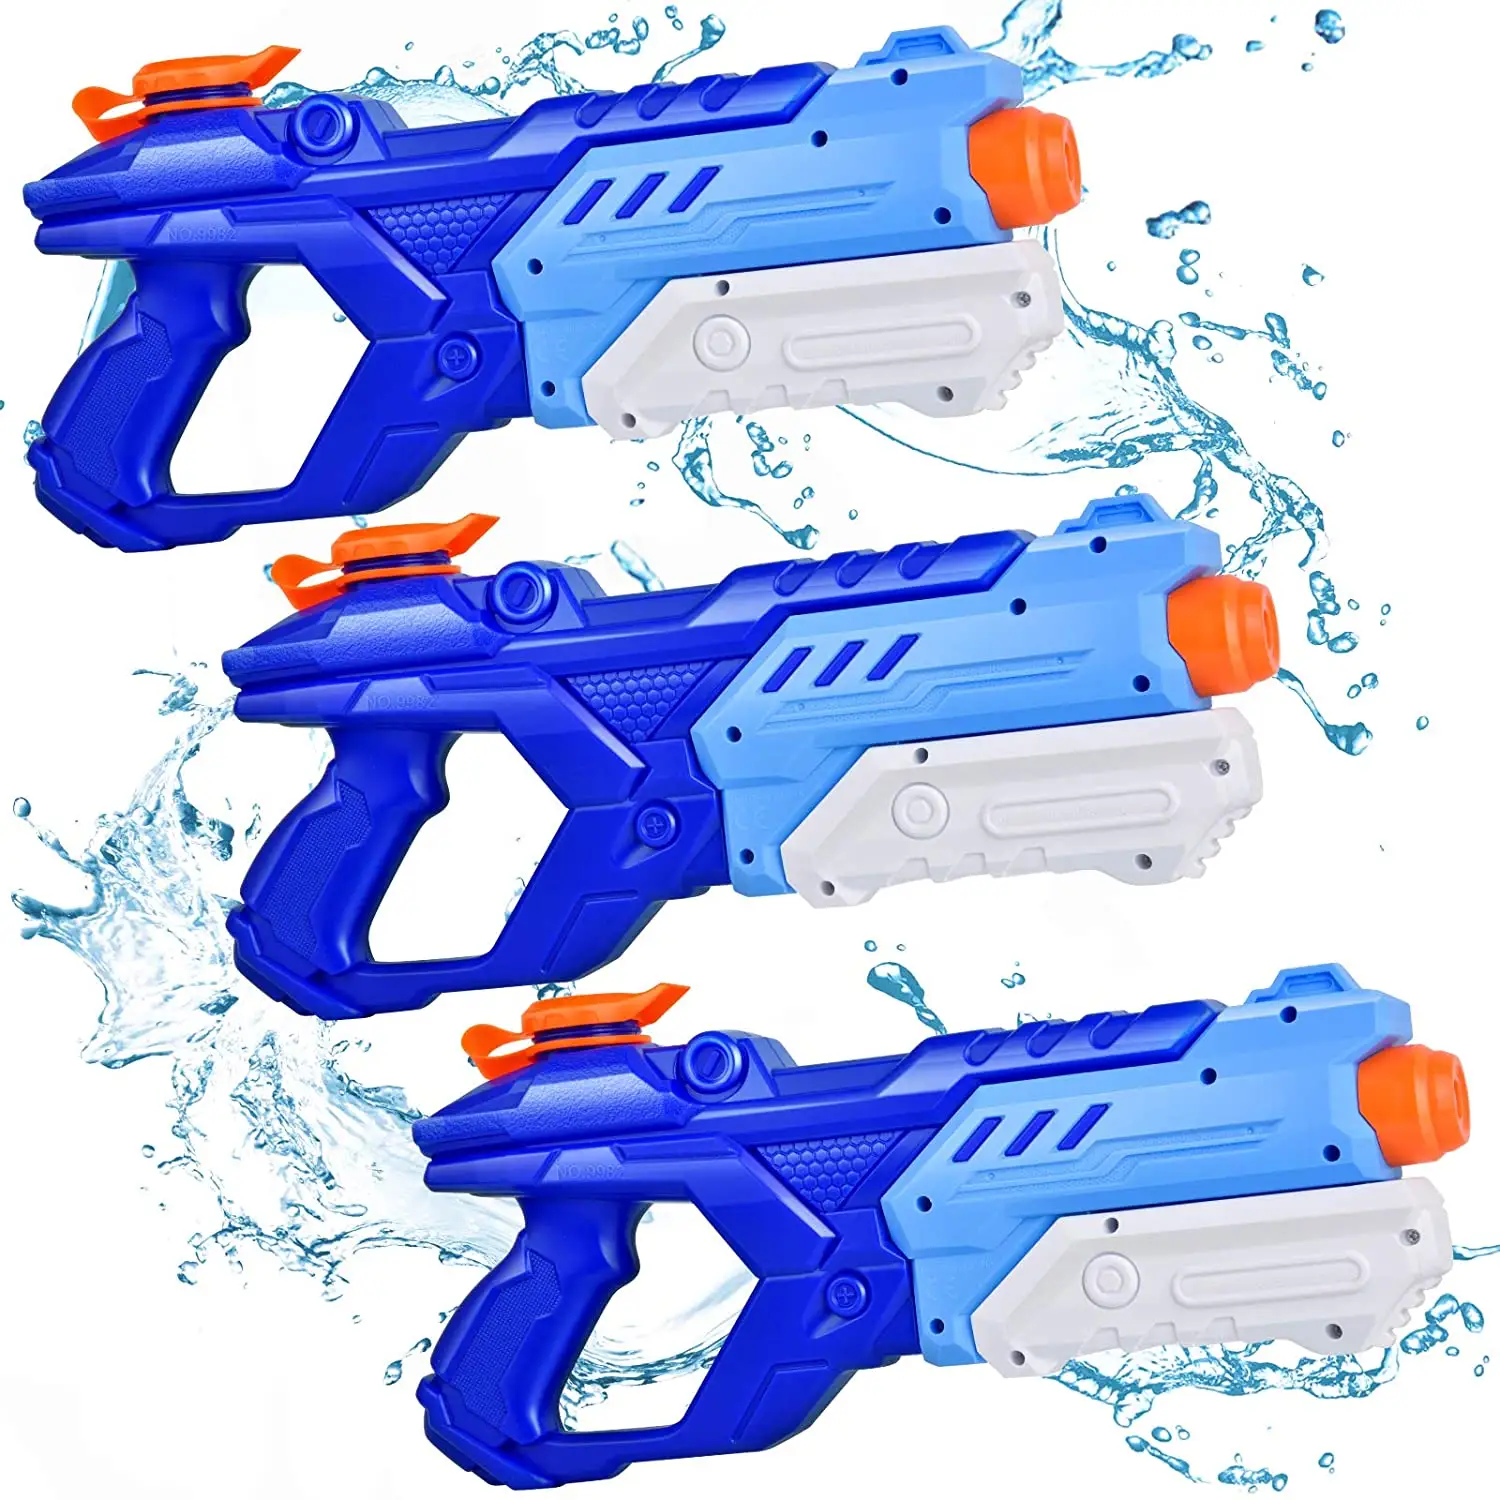 Pistolet à eau pour enfants, Super jeu de projection d'eau, Blaster, 300CC, jouets, cadeaux pour garçons et filles, piscine d'été, idée cadeau pour les petits